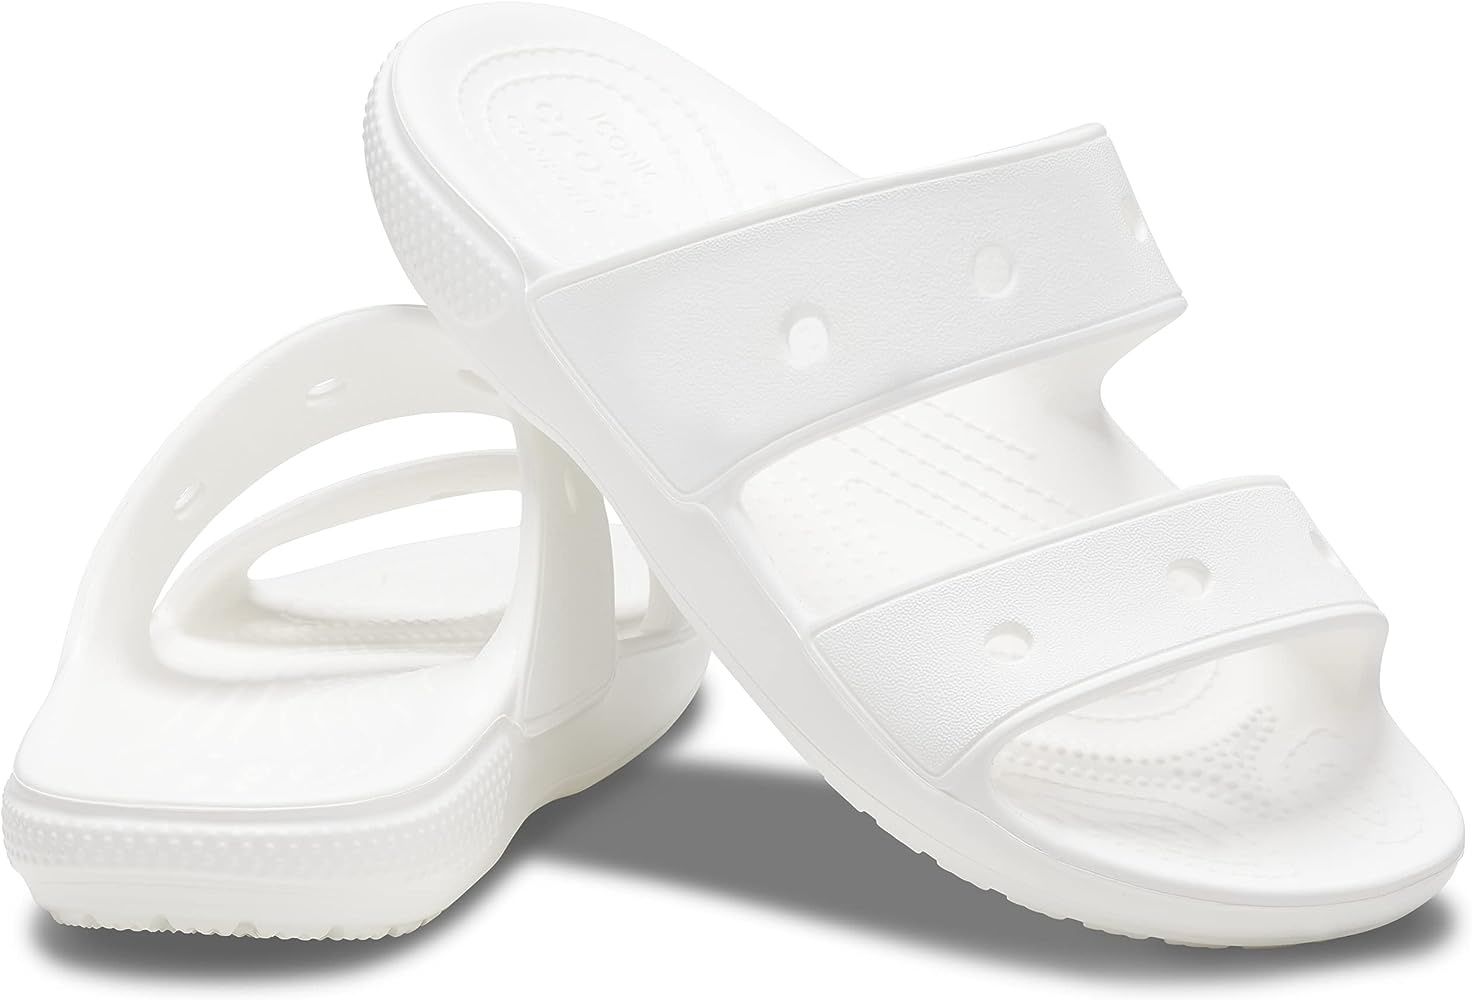 Crocs Classic sandal шлепанцы женские крокс +2 джибитса в подарок.